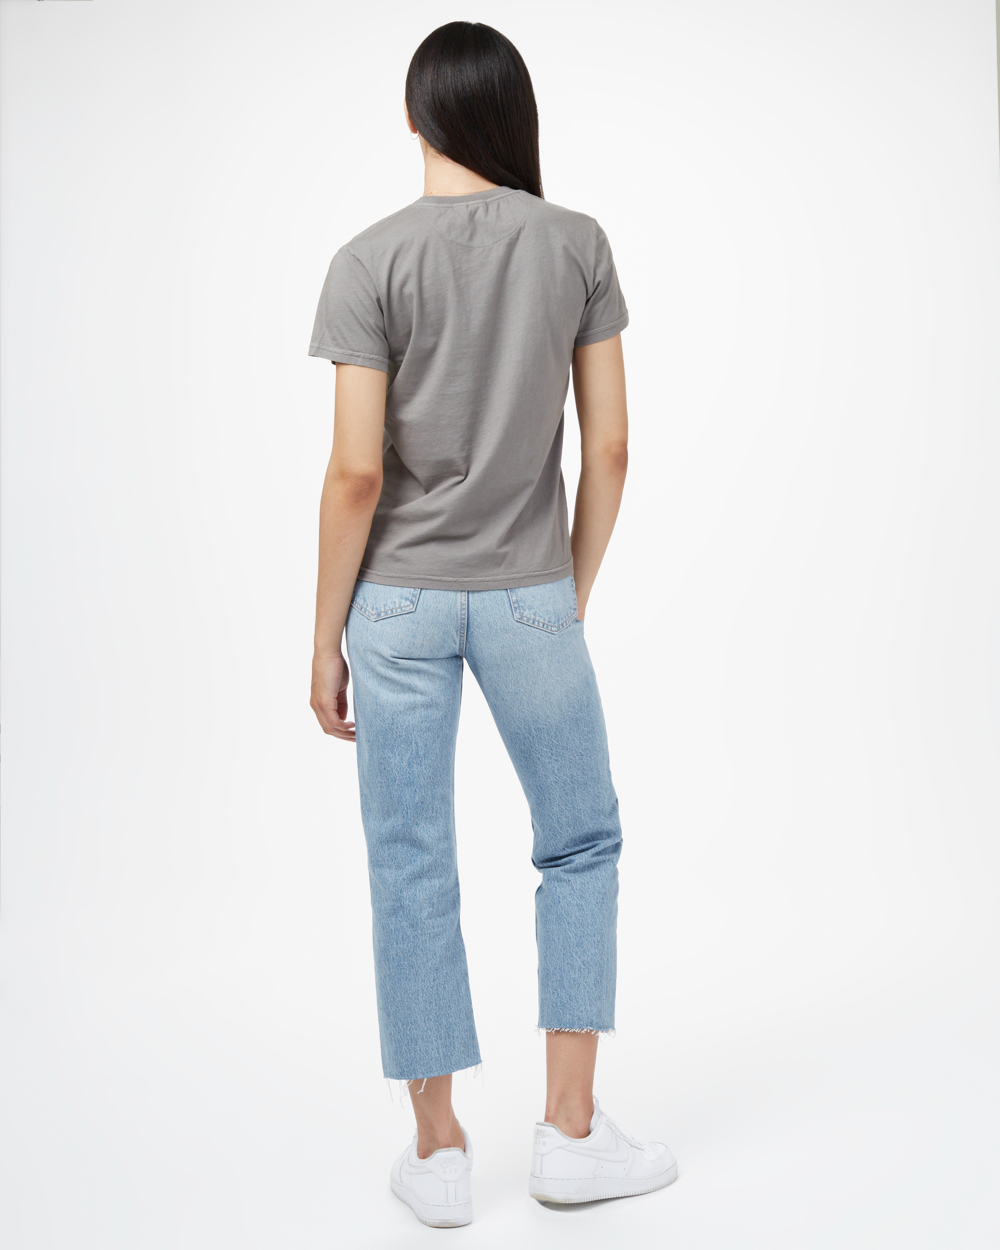 W Natural Dye T-Shirt, granite grey